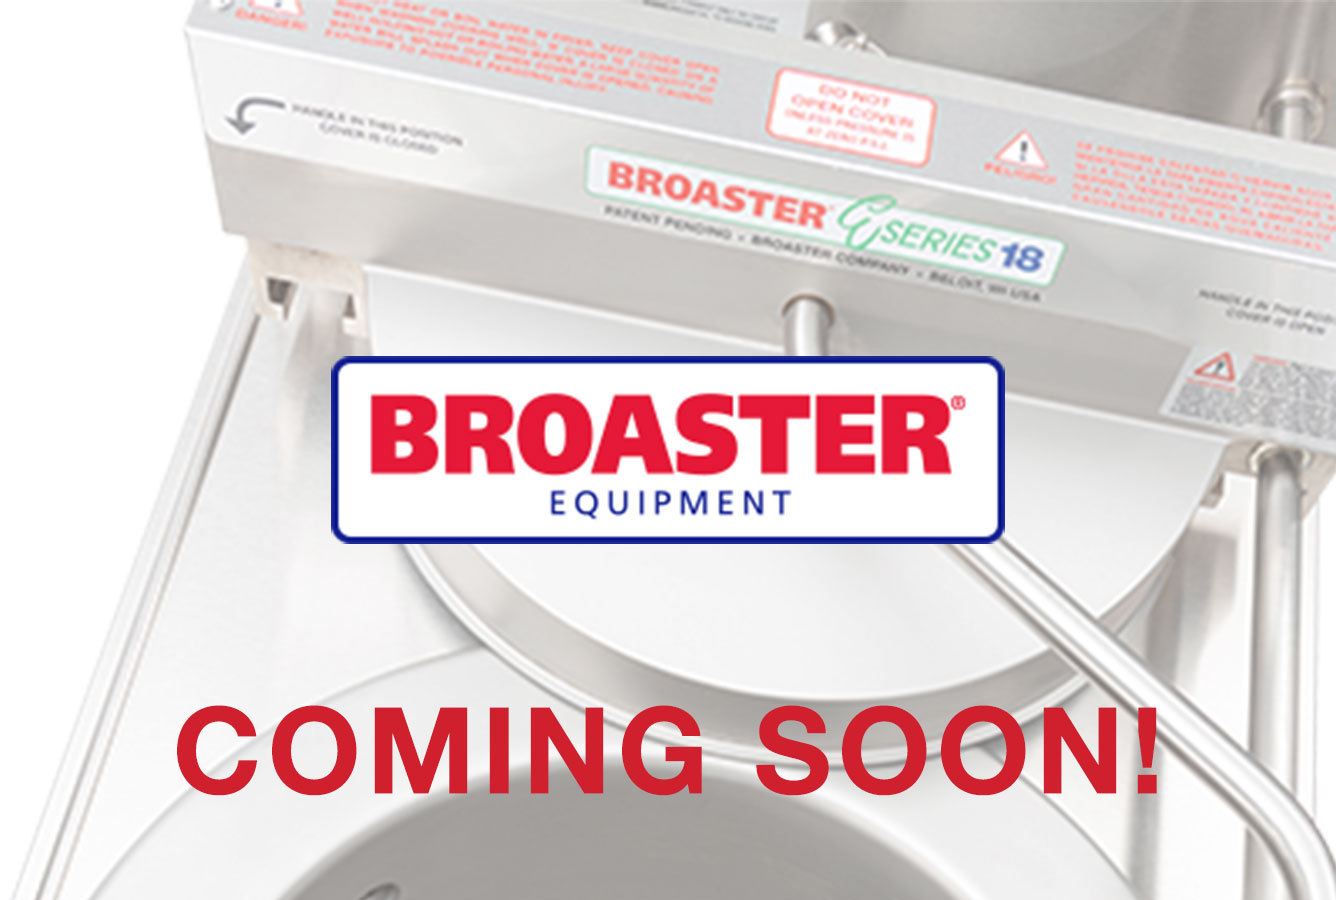 broaster equipment ESeries coming soon